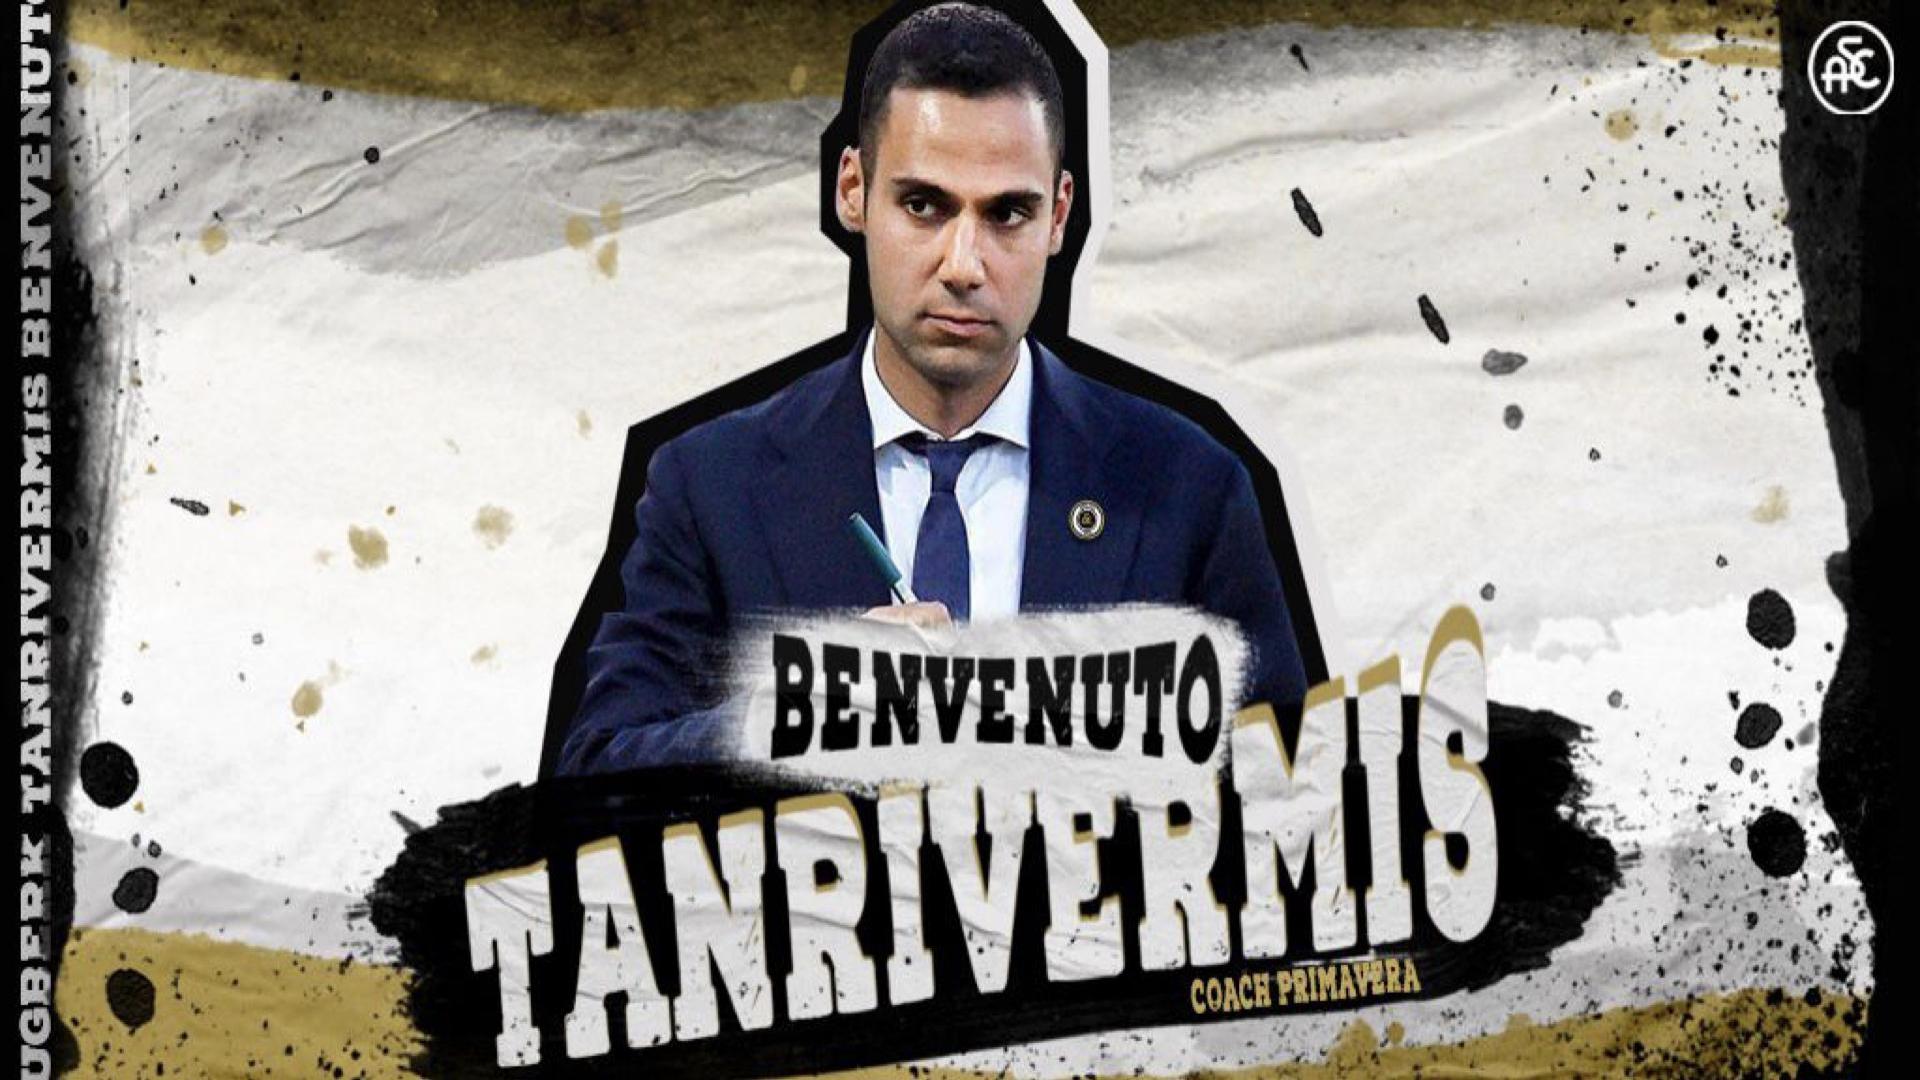 Ufficiale | Tugberk Tanrivermis è il nuovo allenatore della Primavera